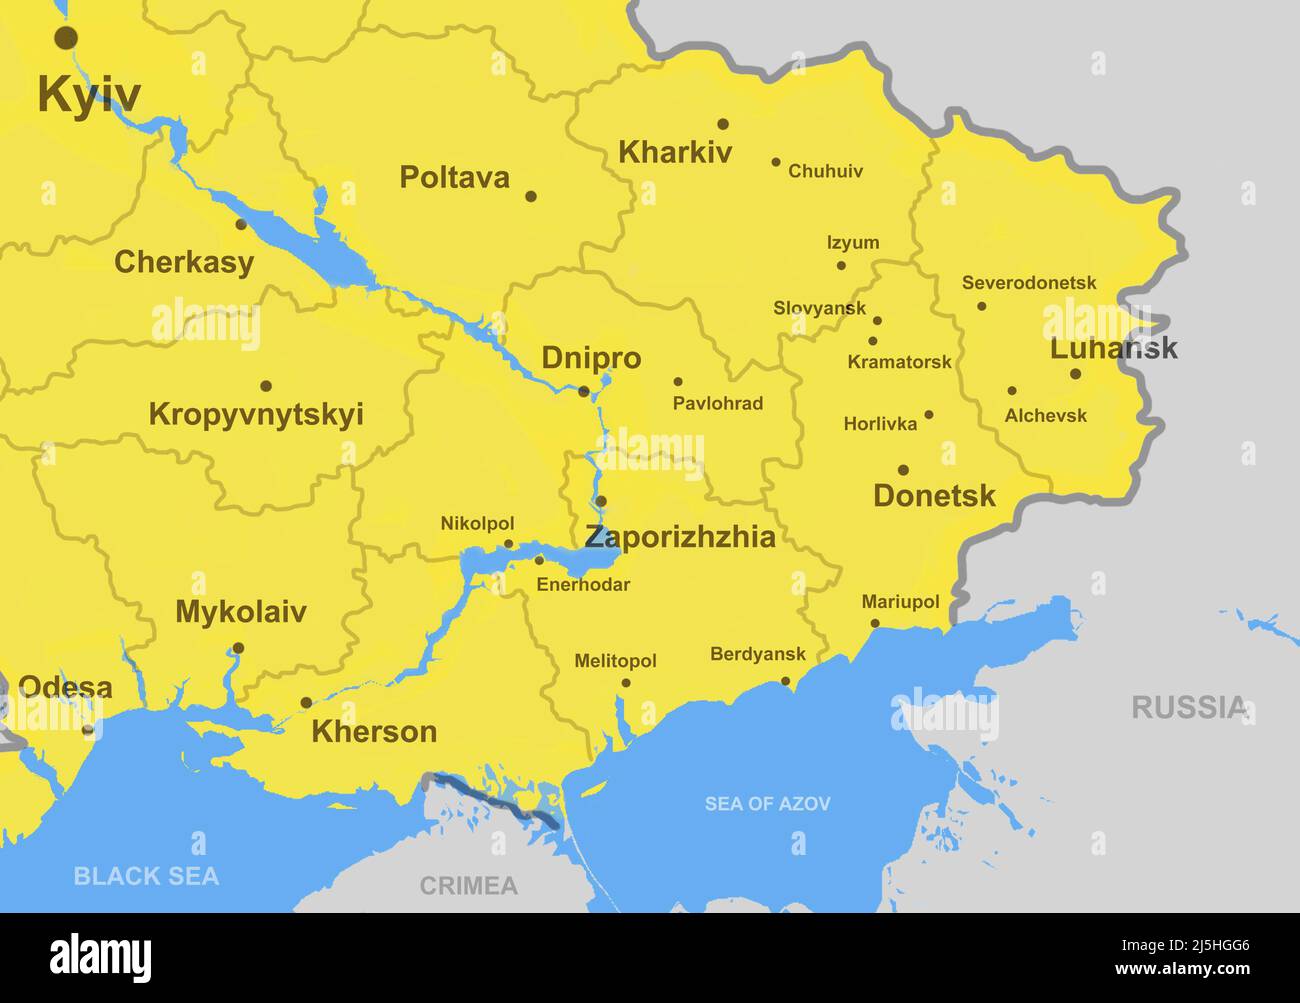 Karte des Südostens der Ukraine mit der Region Donbas, Städten und Grenzen. Luhansk, Donezk und Mariupol auf Übersichtskarte mit Krim-, Schwarz- und Asowschen Meeren. Kontra Stockfoto